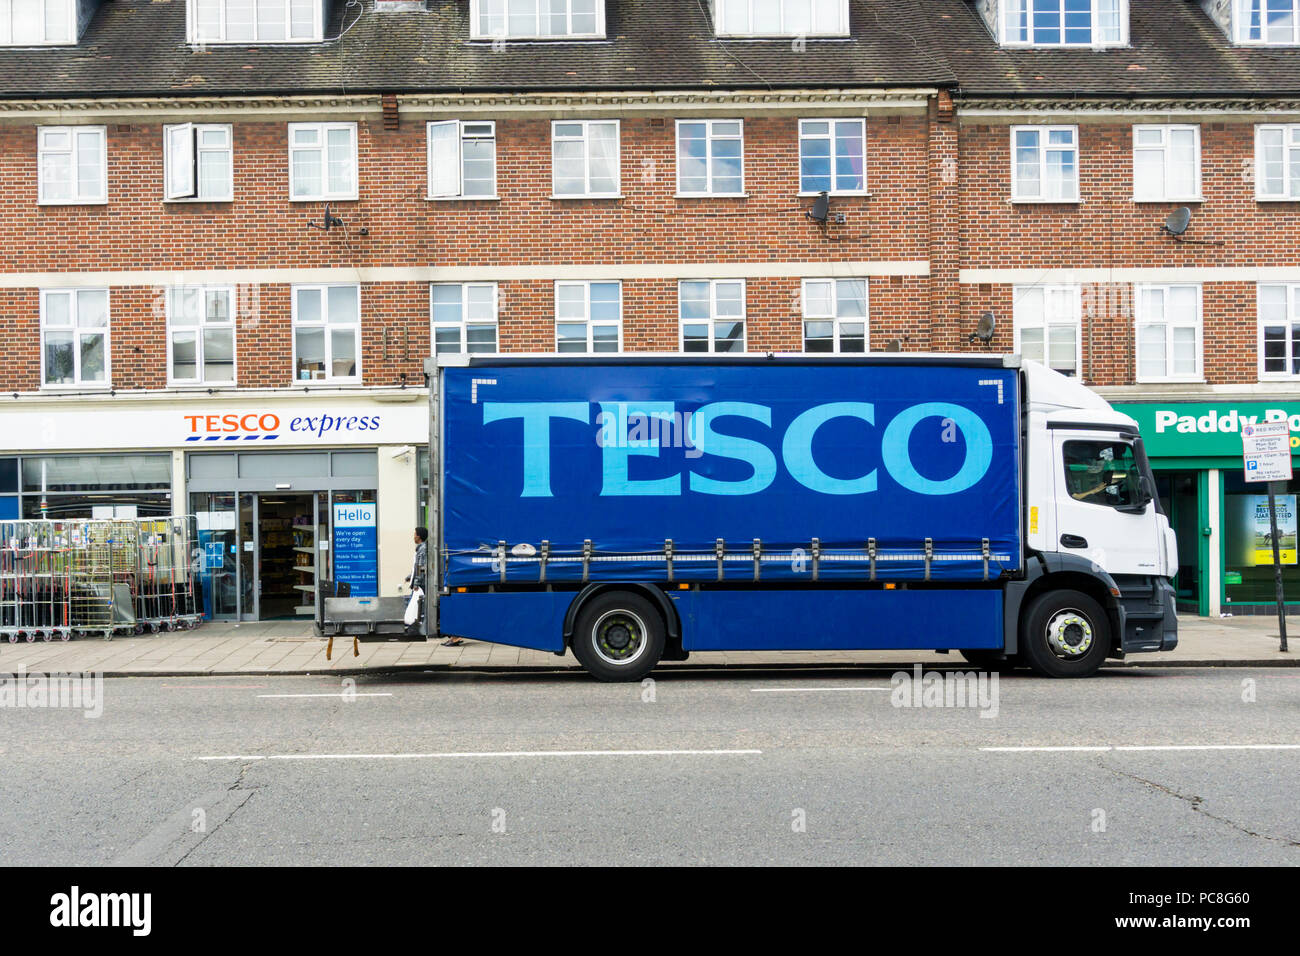 Au cours de chaussée pour un Tesco Express shop dans le sud de Londres. Banque D'Images